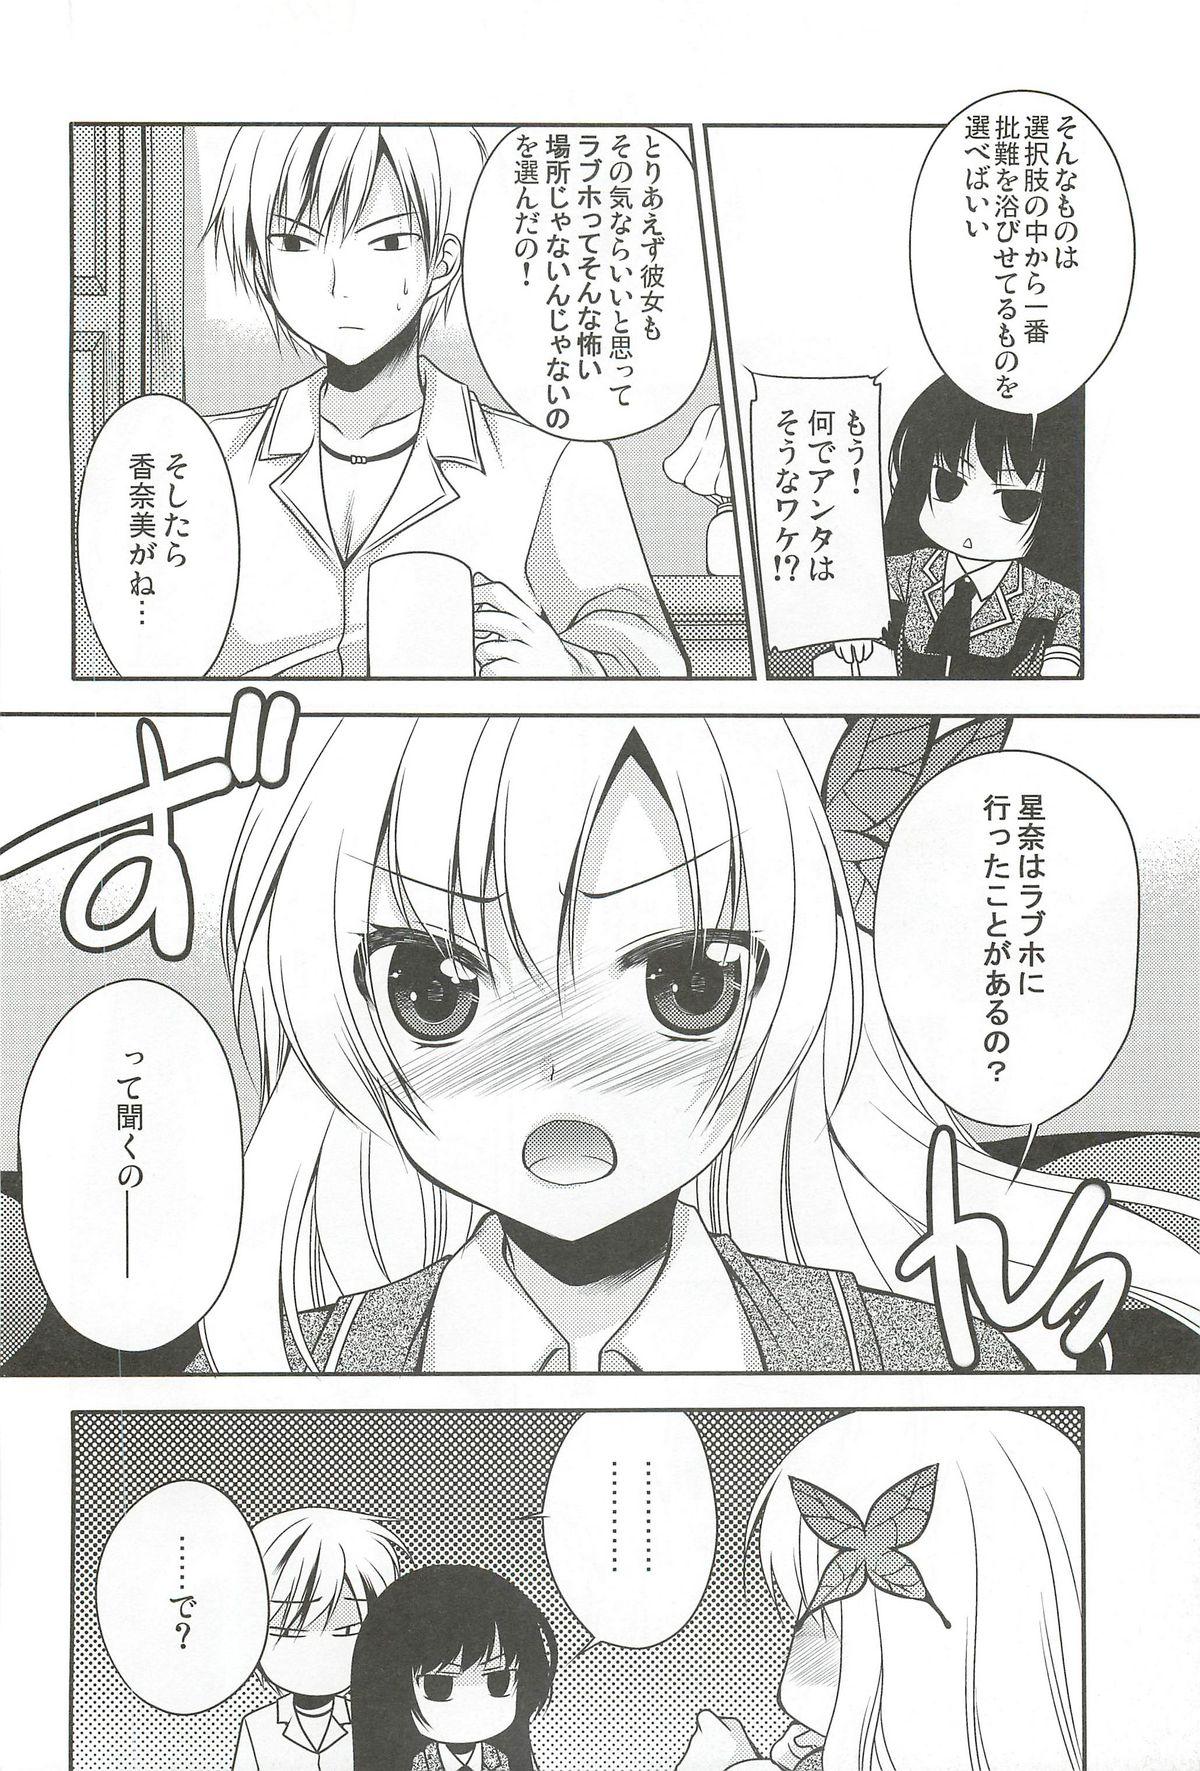 Soapy Yozora wa Ore no Tenshi - Boku wa tomodachi ga sukunai Amatuer - Page 6